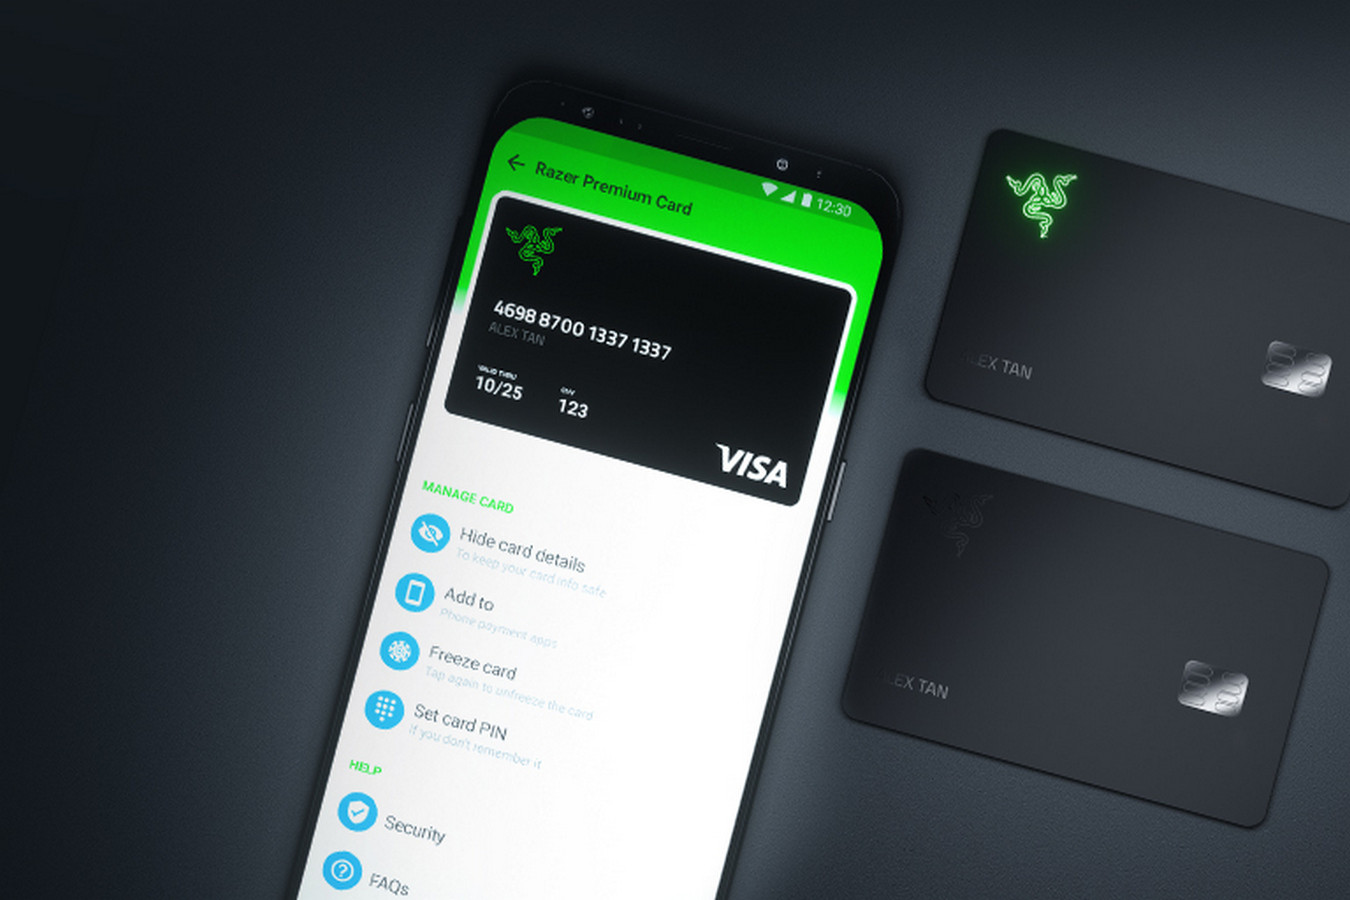 Razer и VISA выпустили банковскую карту для геймеров. Она загорается зелёным при оплате